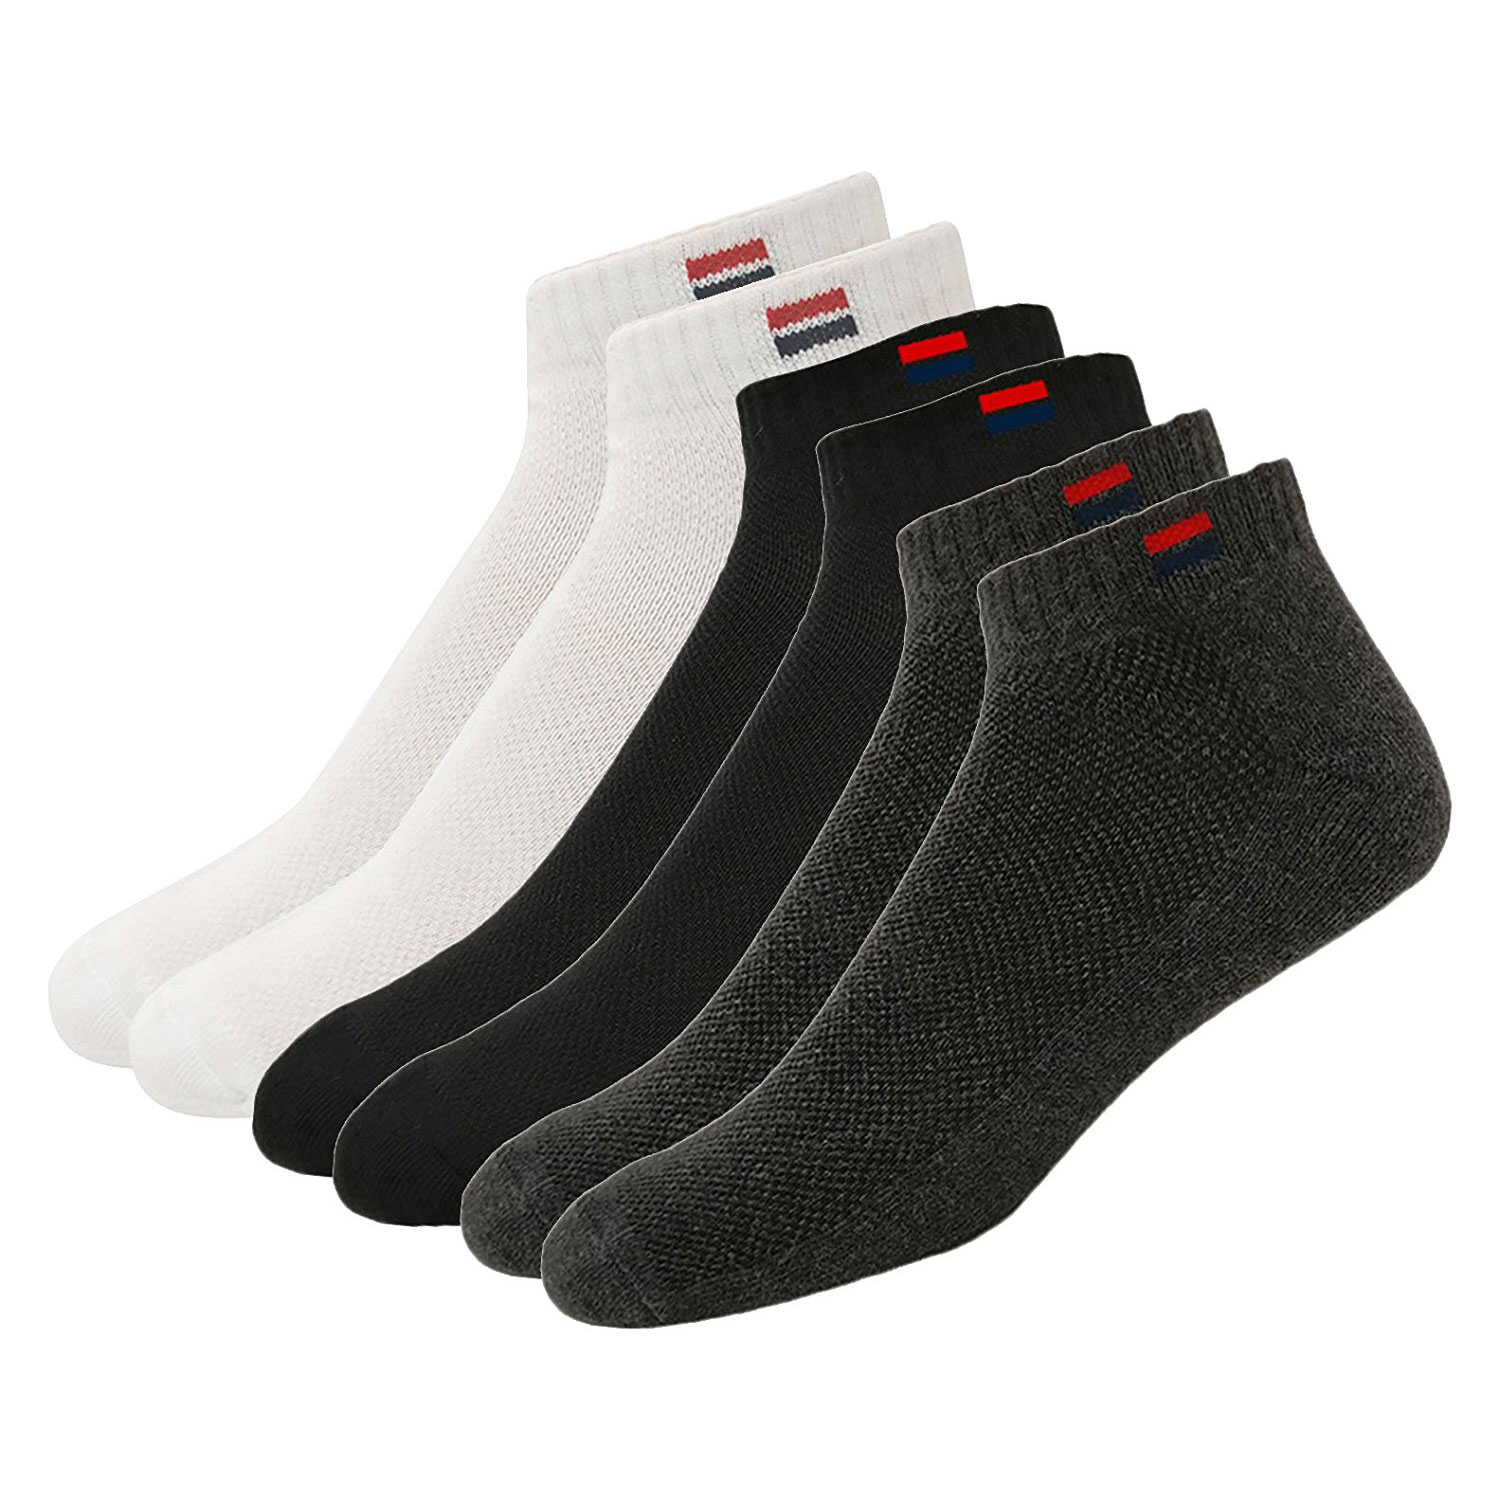  Navy Sport Men's Solid Ankle Length Socks 